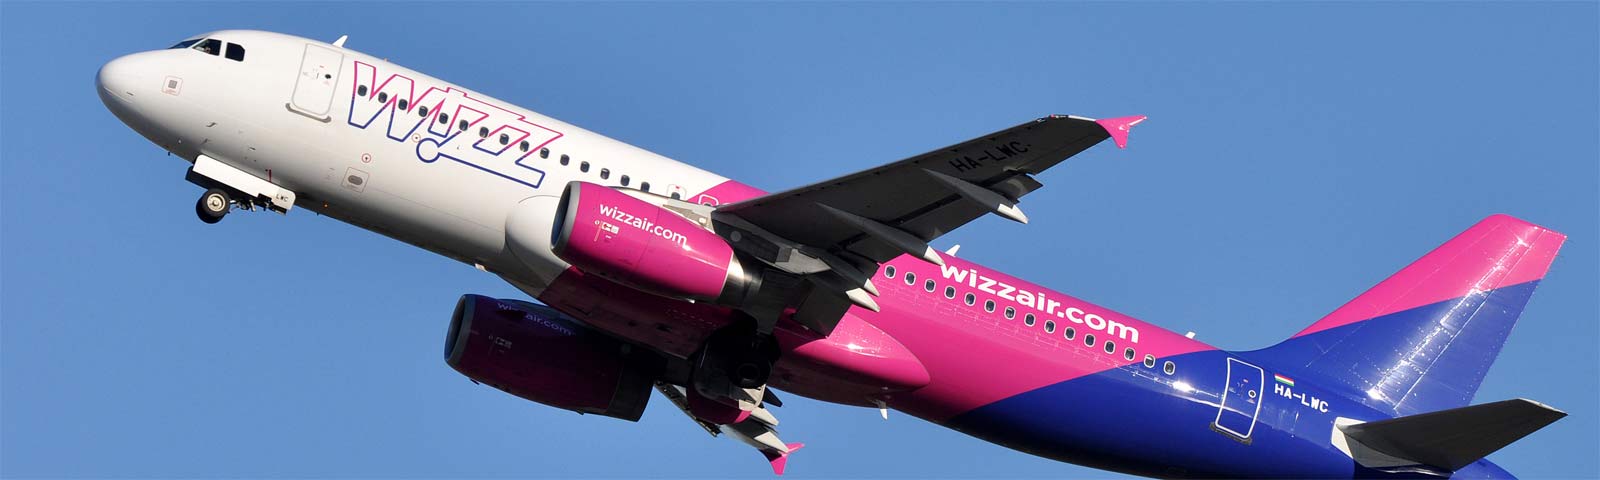 aeroplano in decollo della compagnia wizz air